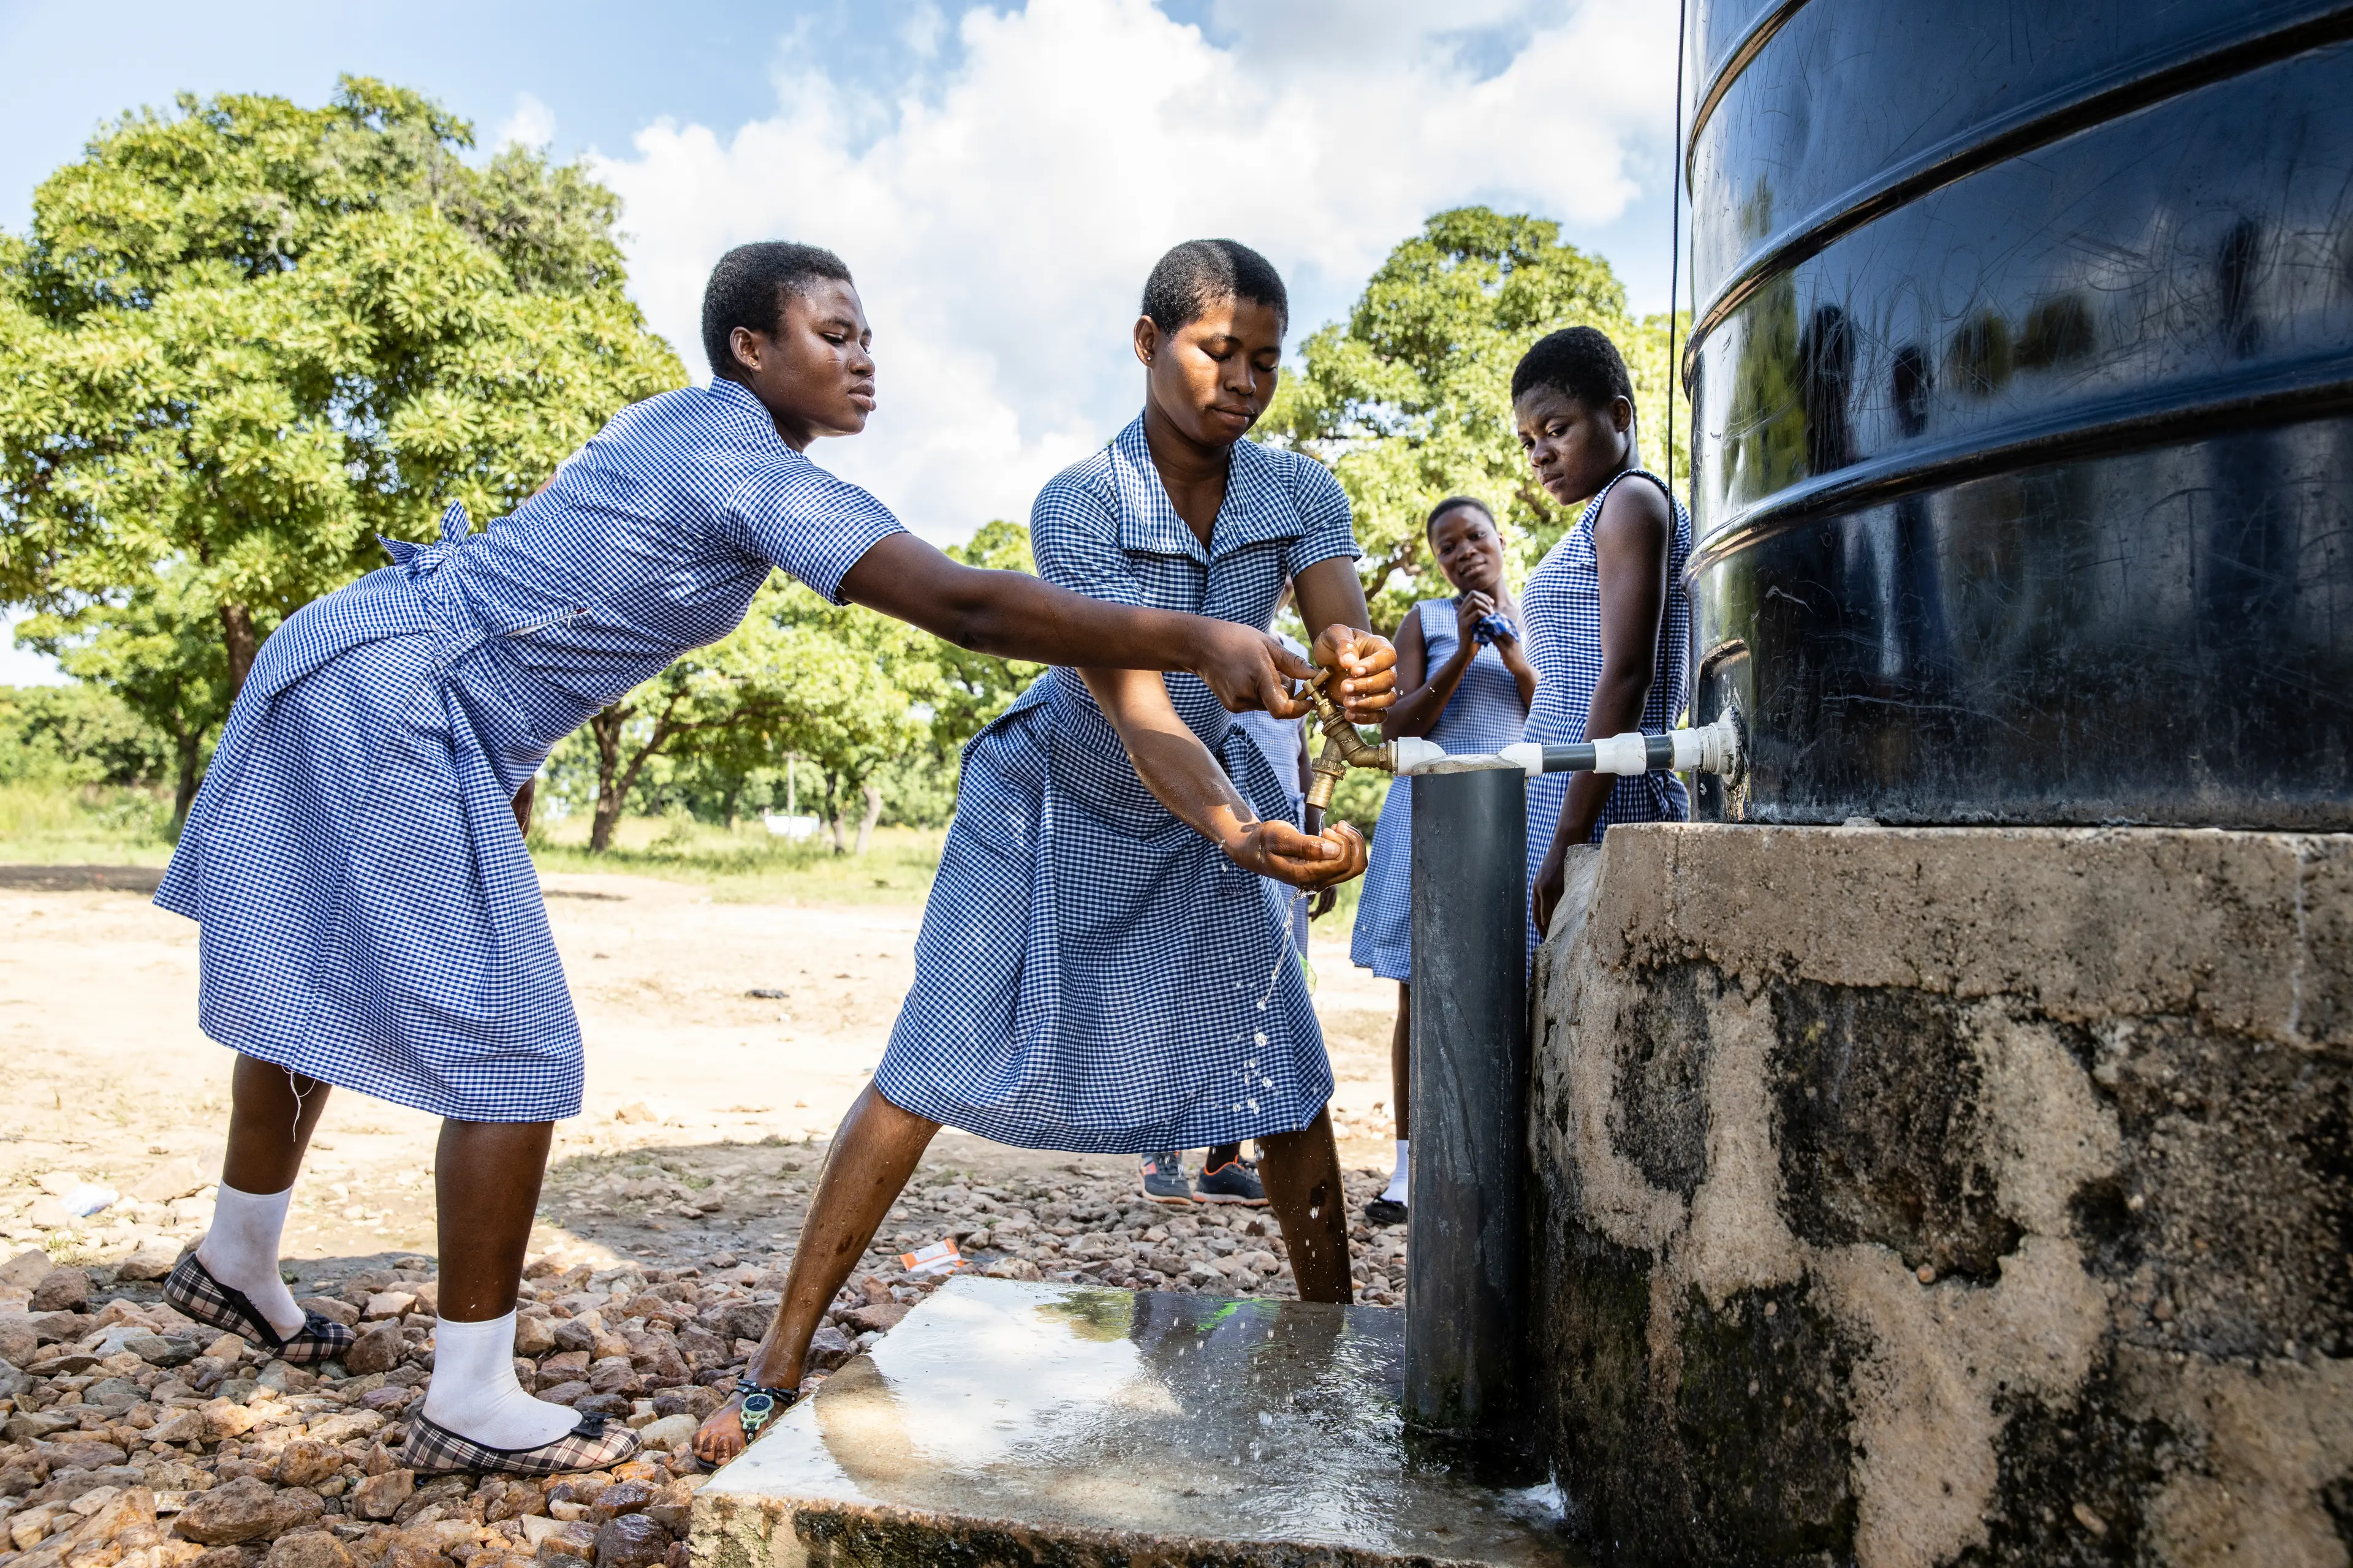 Des élèves se lavent les mains devant un réservoir d'eau. Elles portent toutes un uniforme scolaire.